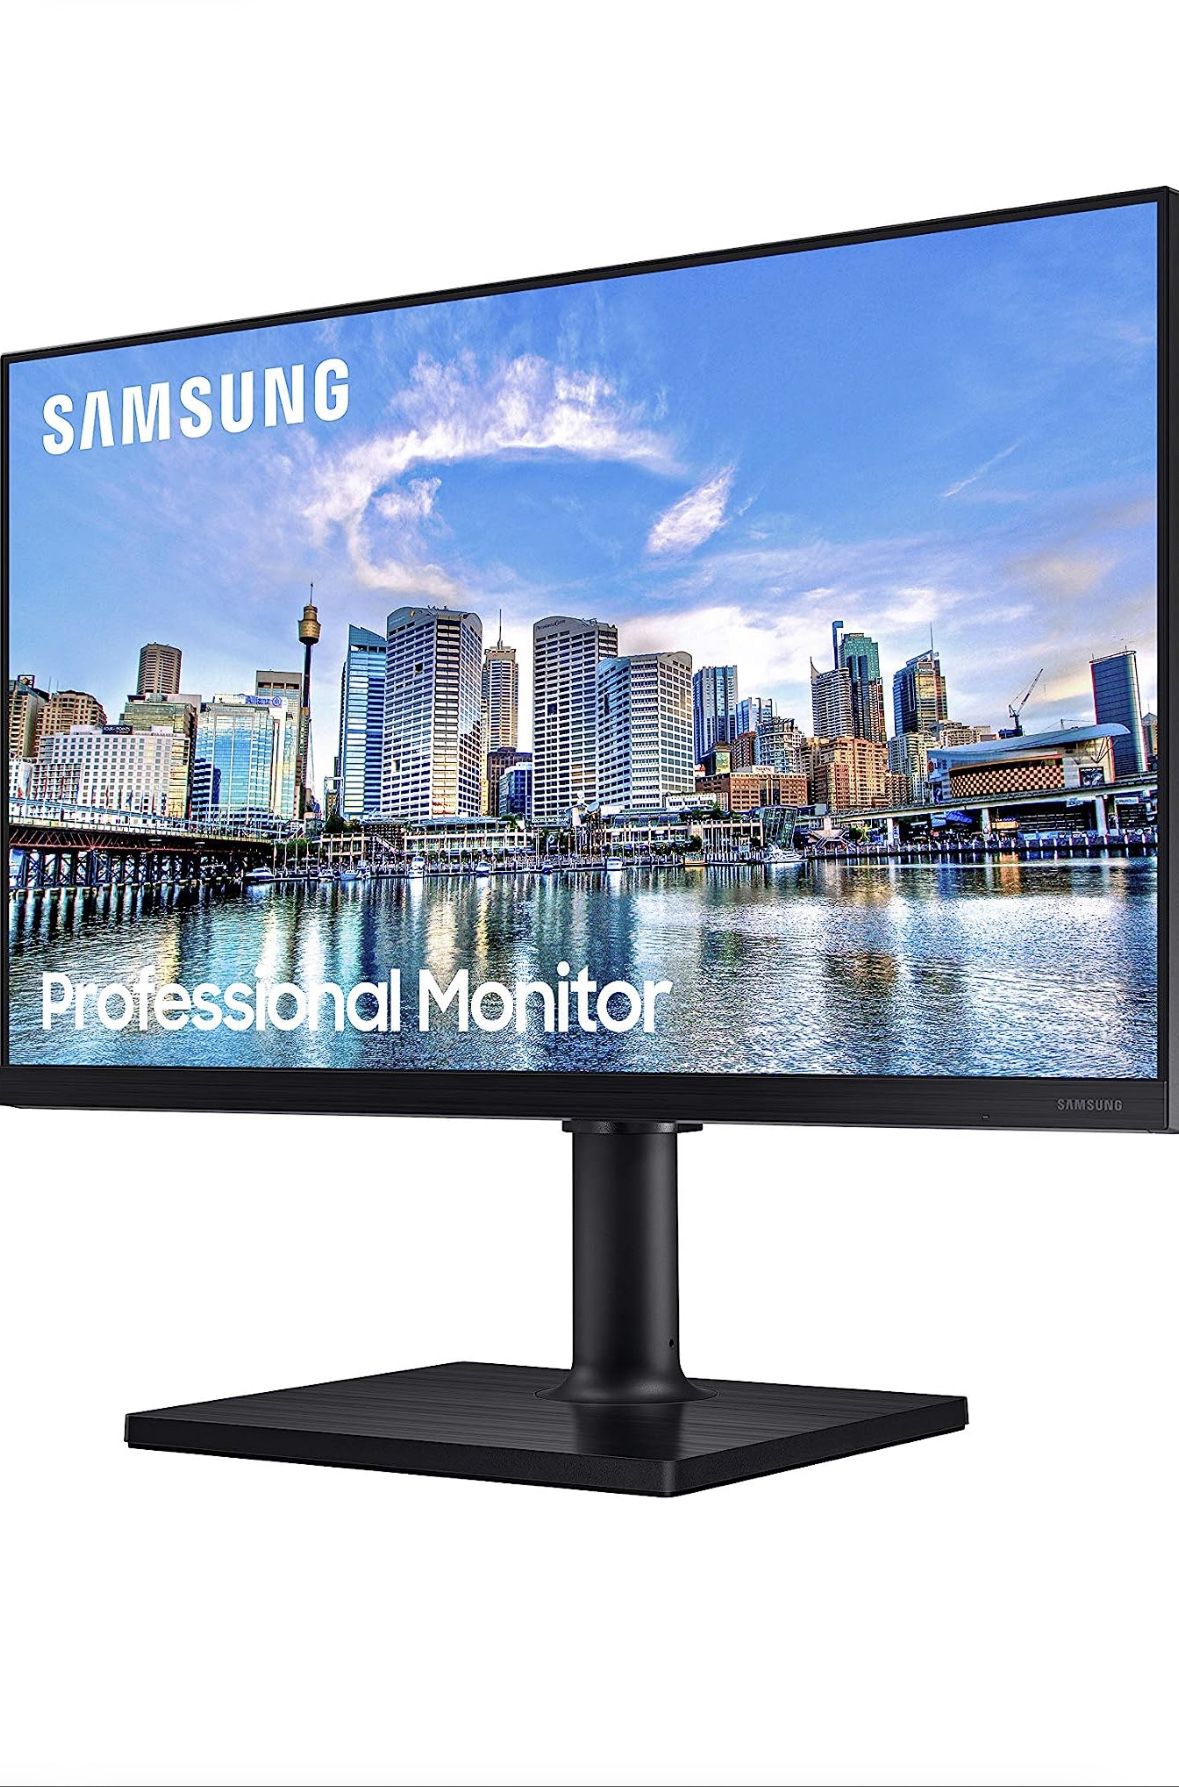 Samsung Computer monitor